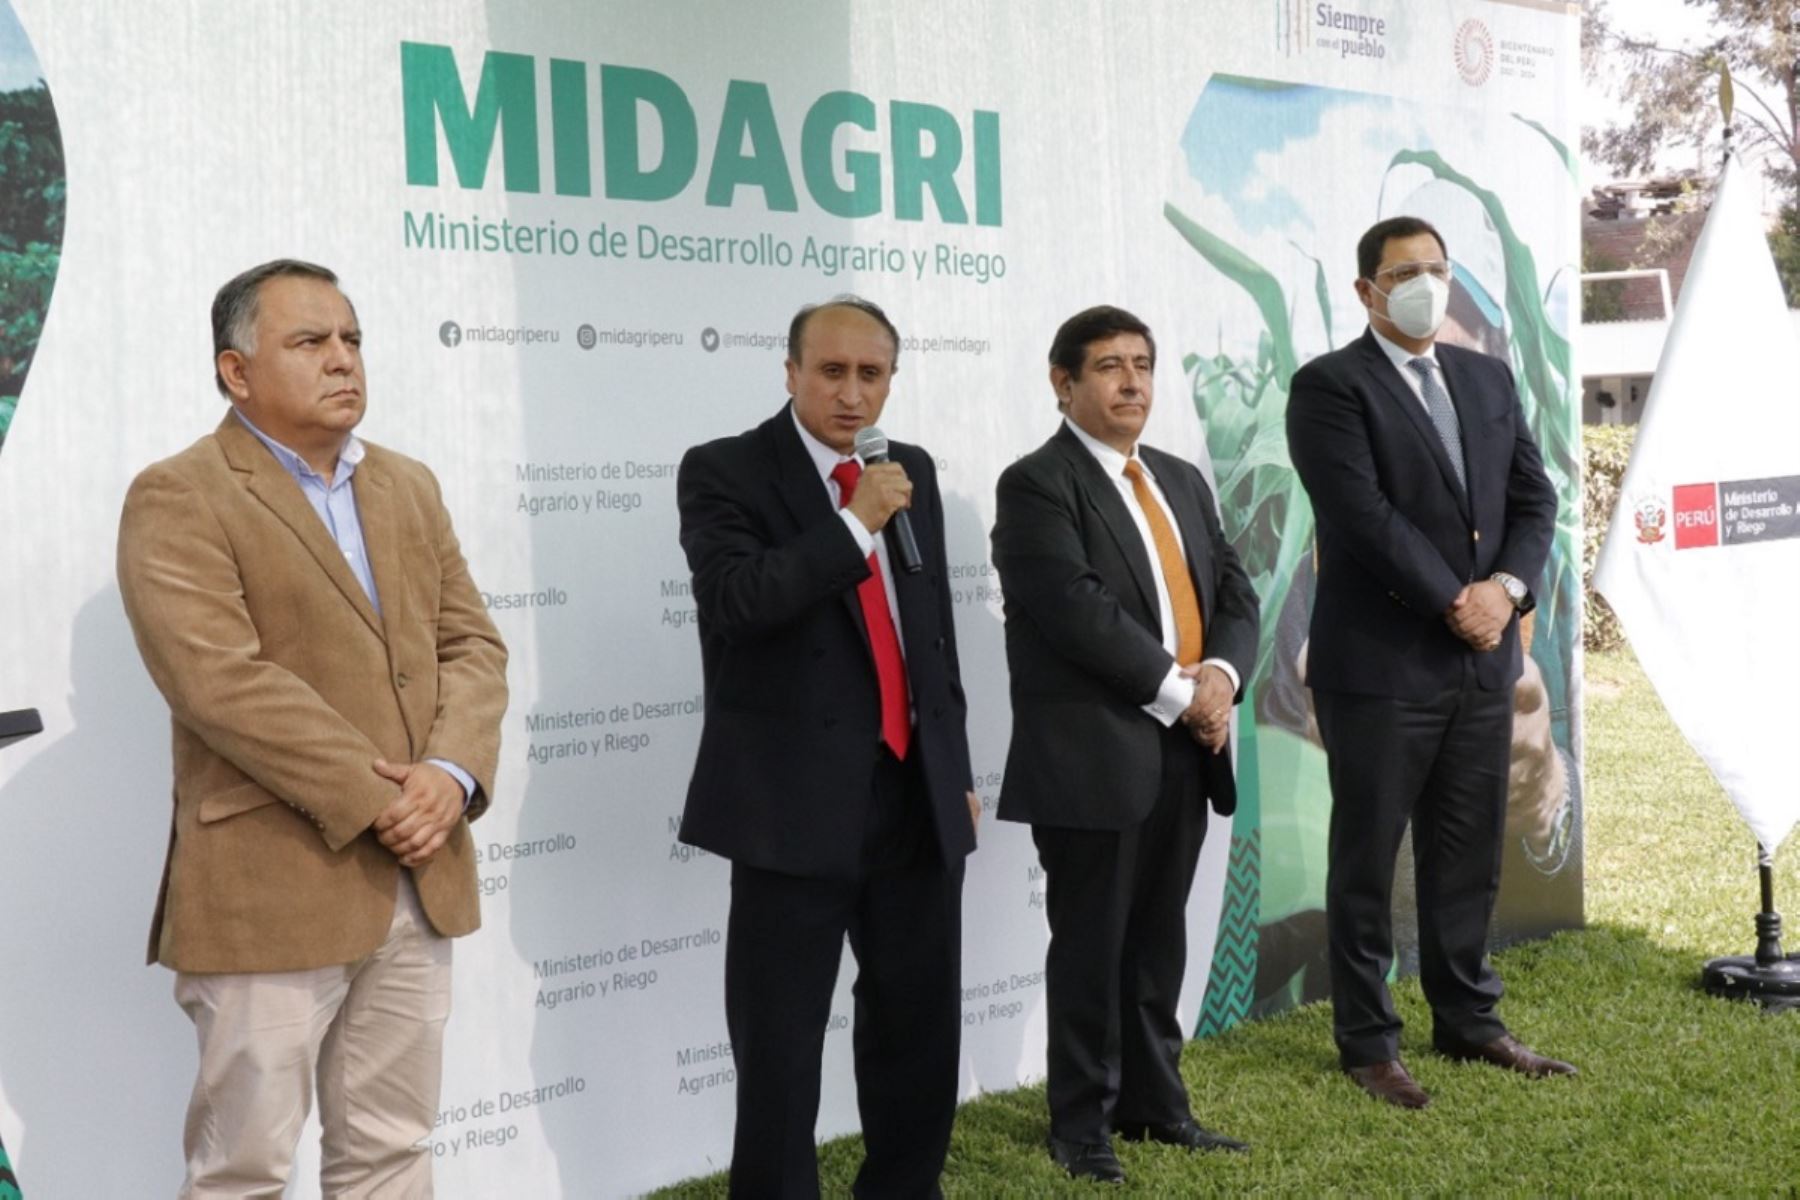 El nuevo ministro de Desarrollo Agrario y Riego, Juan Altamirano Quispe, fijó hoy las prioridades de su gestión. Foto: Cortesía.